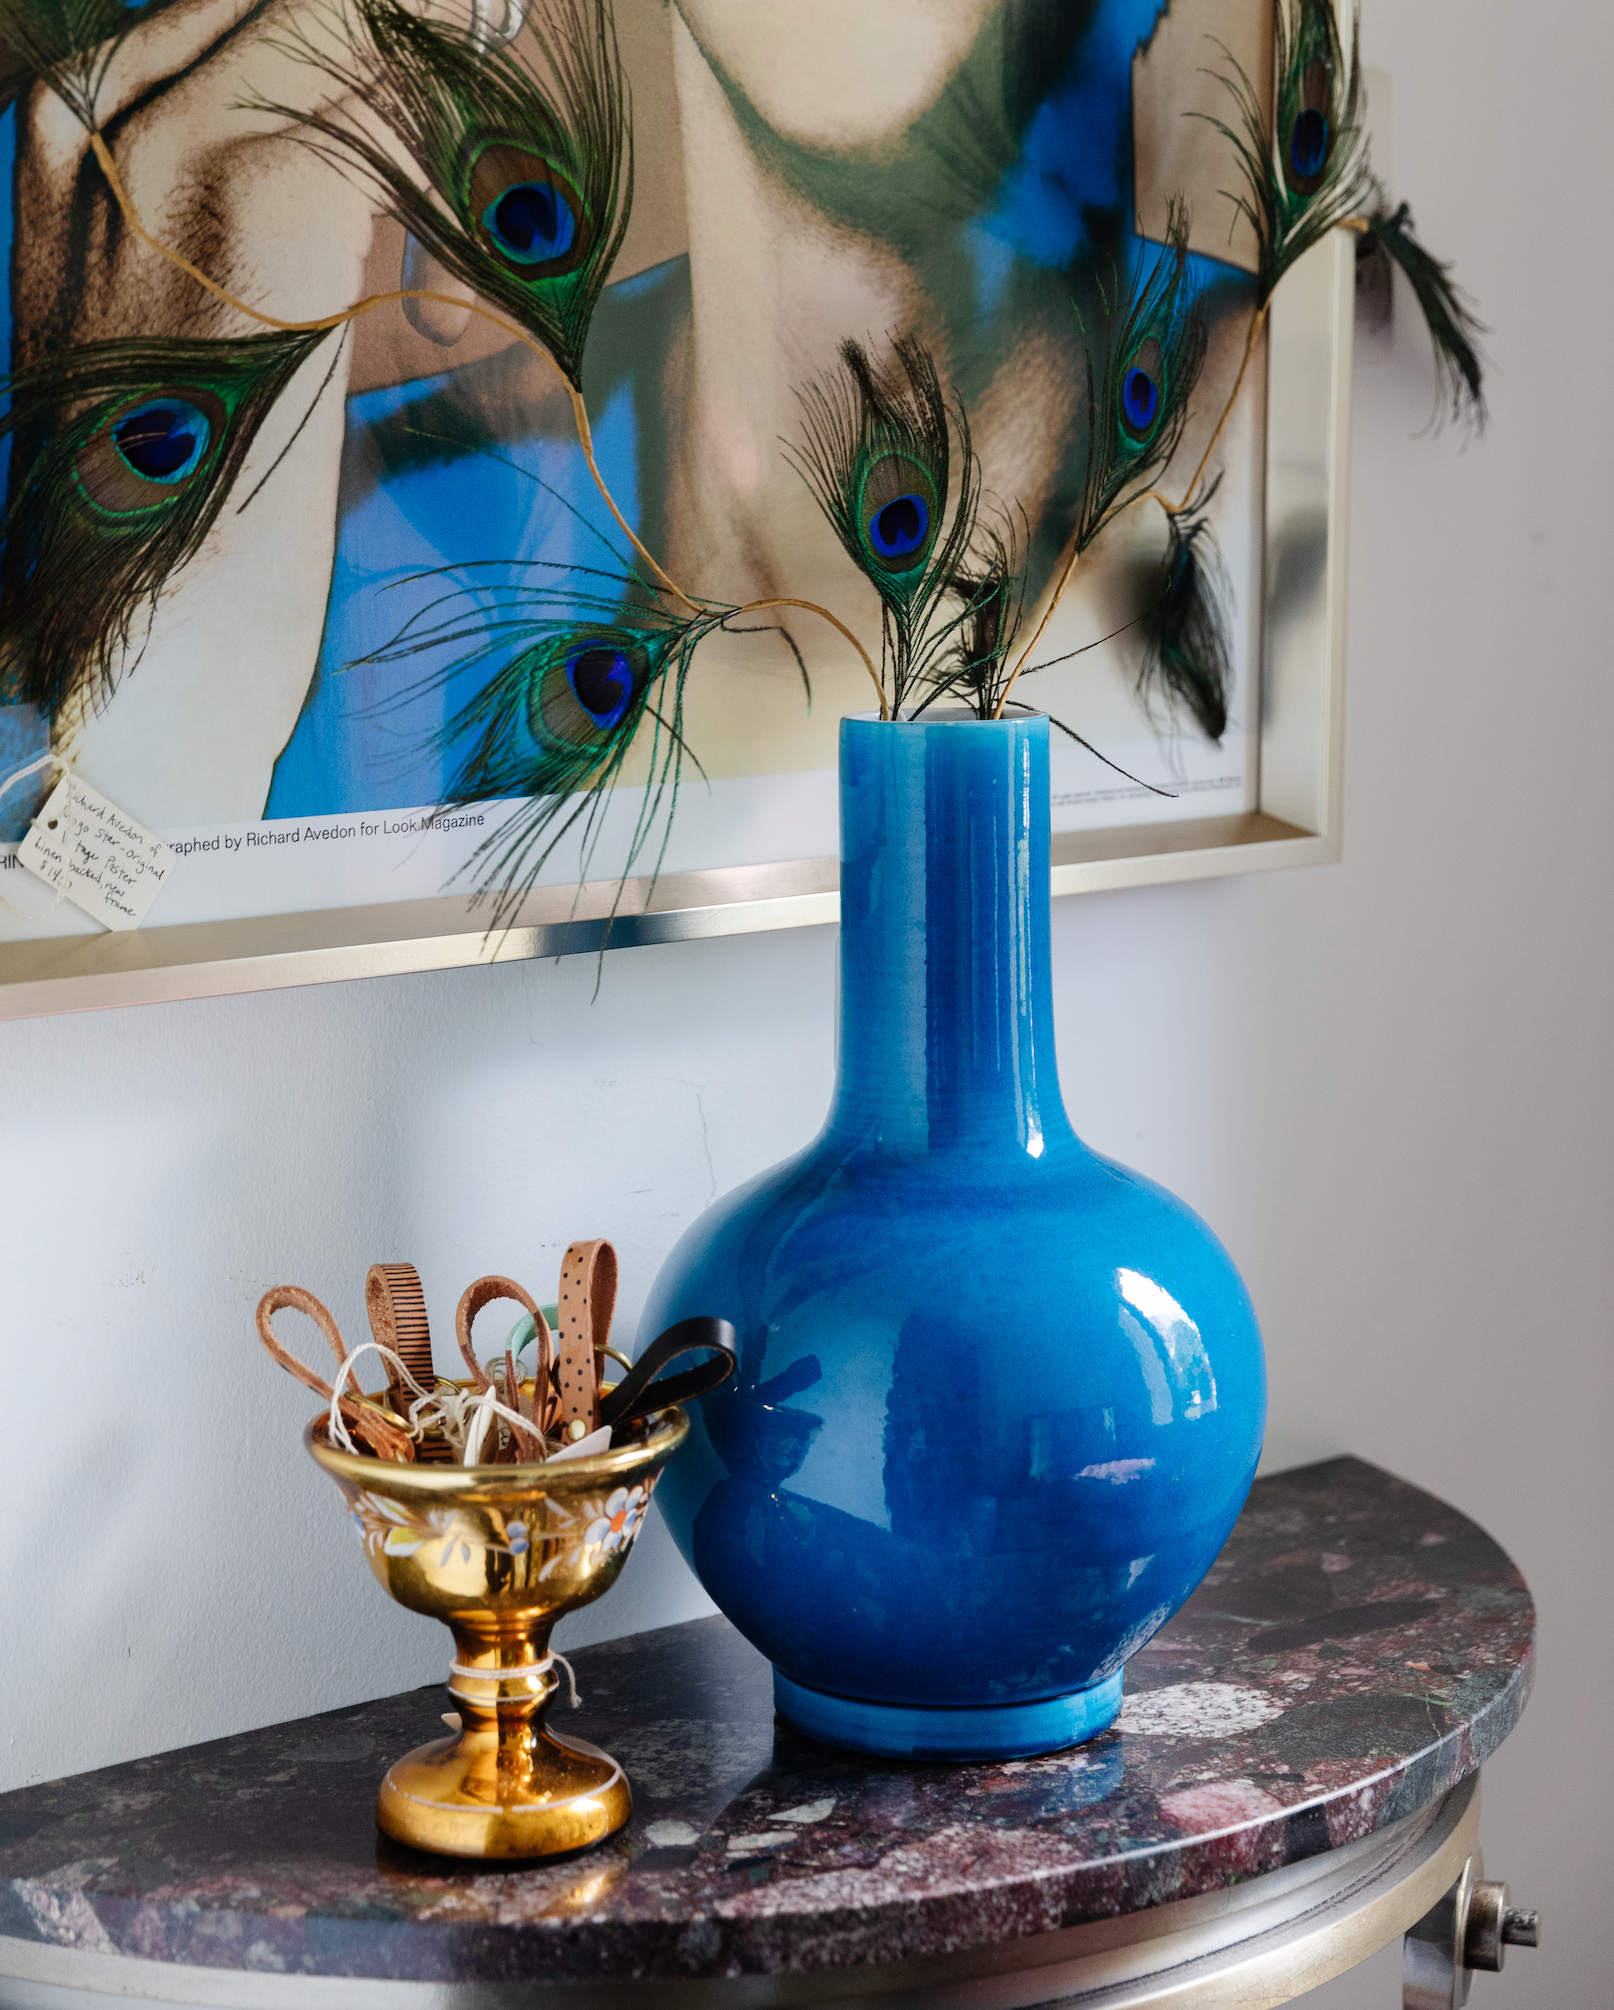 Chinese Porcelain Turquoise Vase